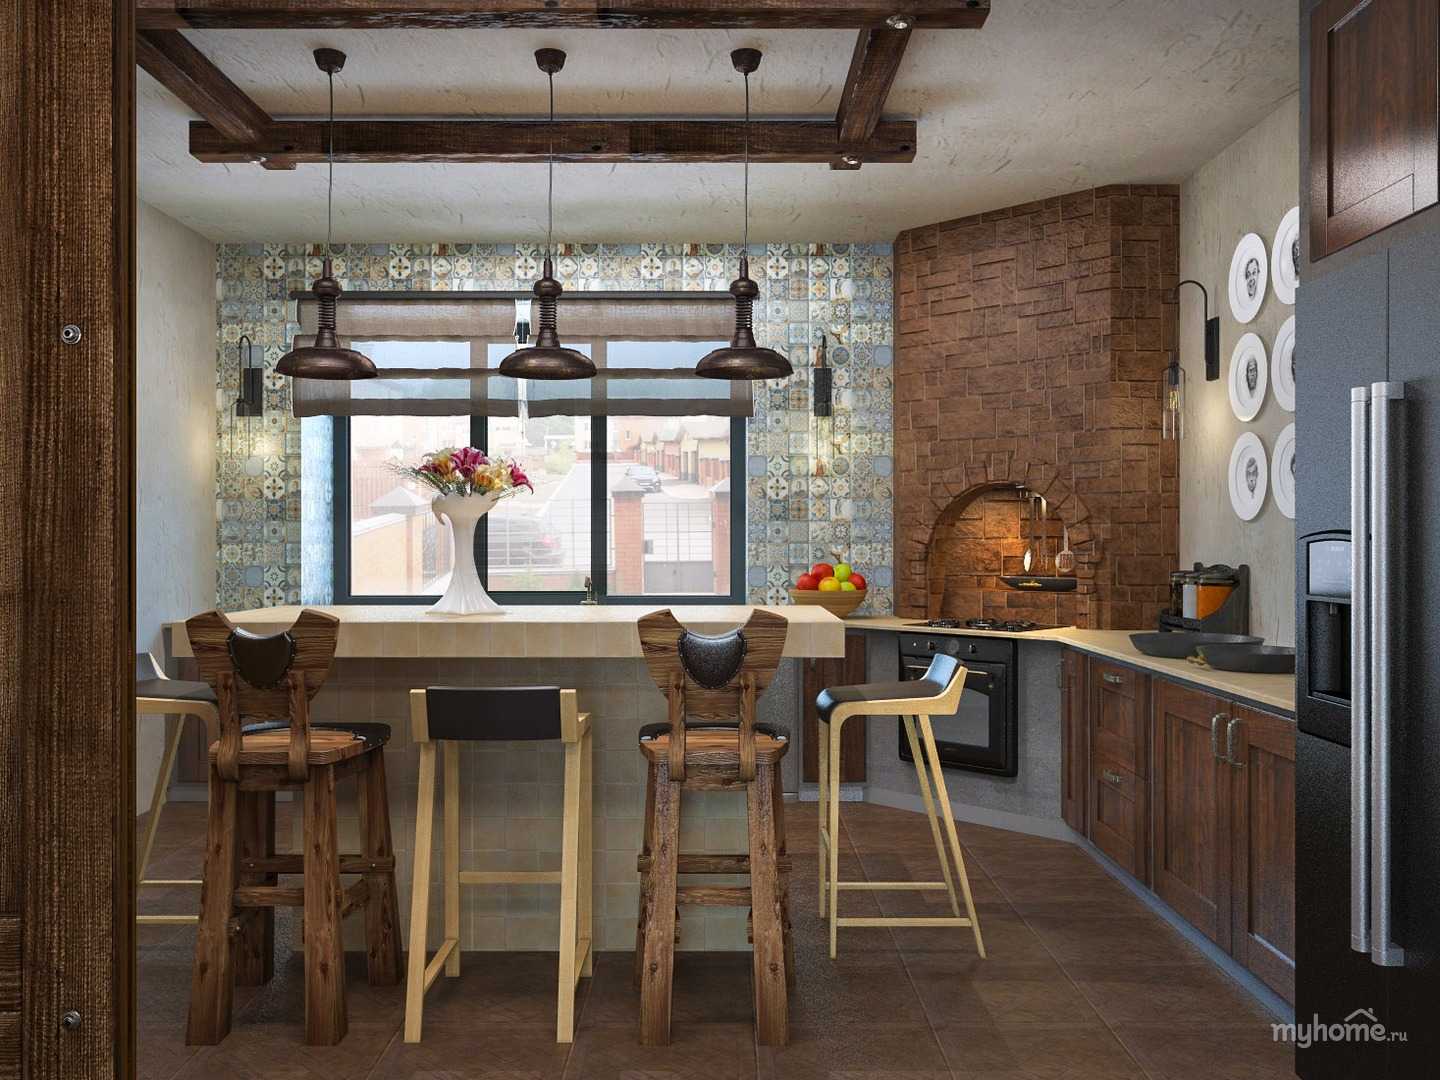 Кухня в стиле прованс - 110 фото идей дизайна интерьера